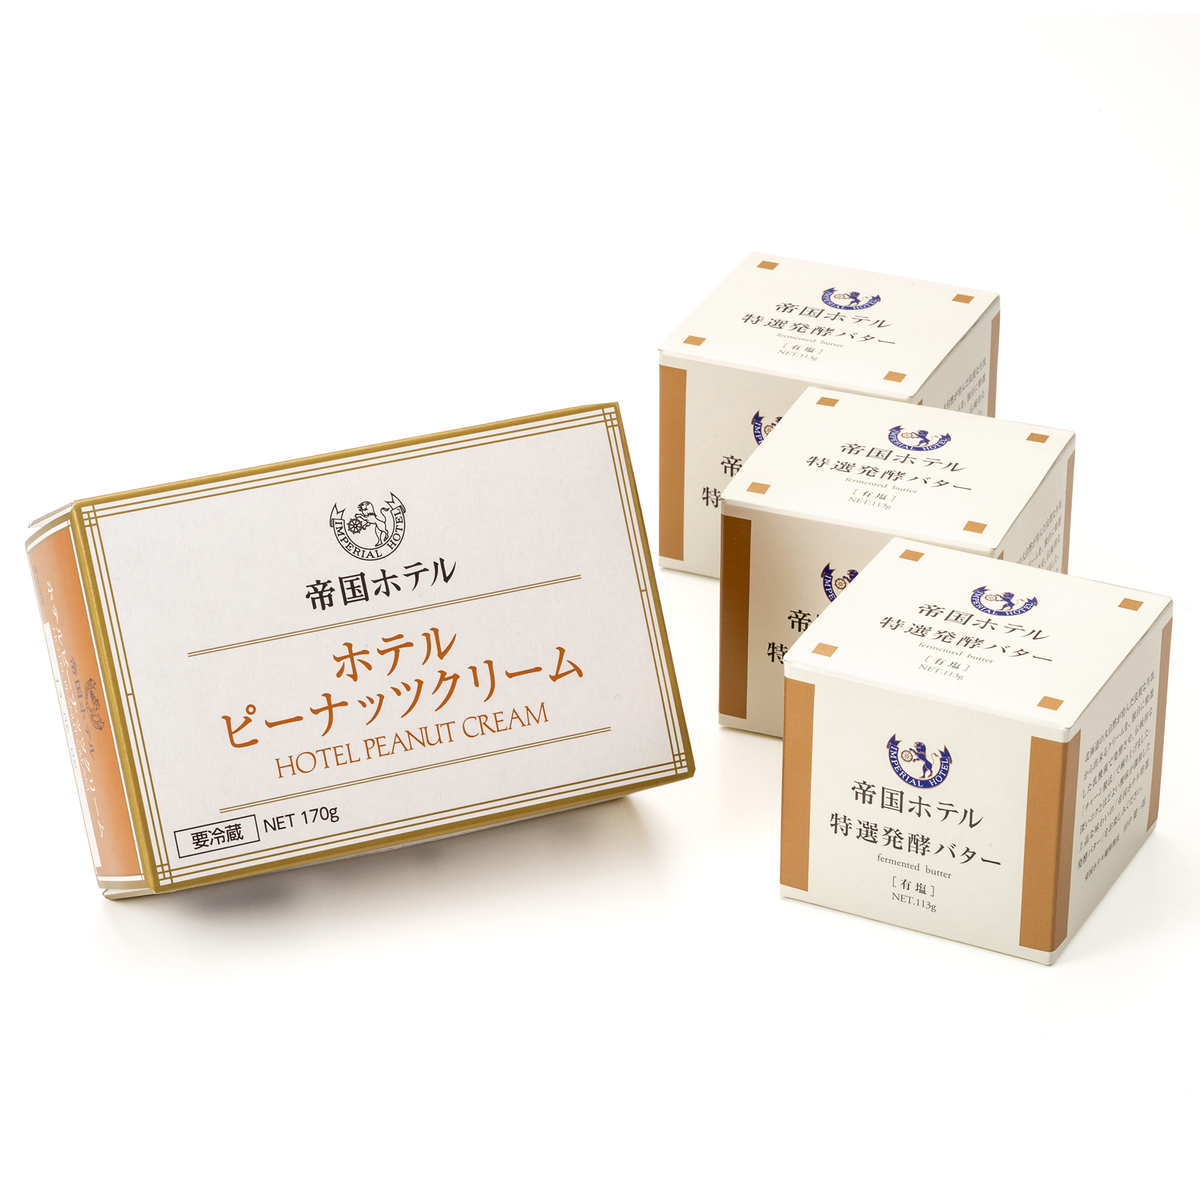 帝国ホテル 特選発酵バターホテルピーナッツクリーム 計4個 帝国ホテル - QVC.jp